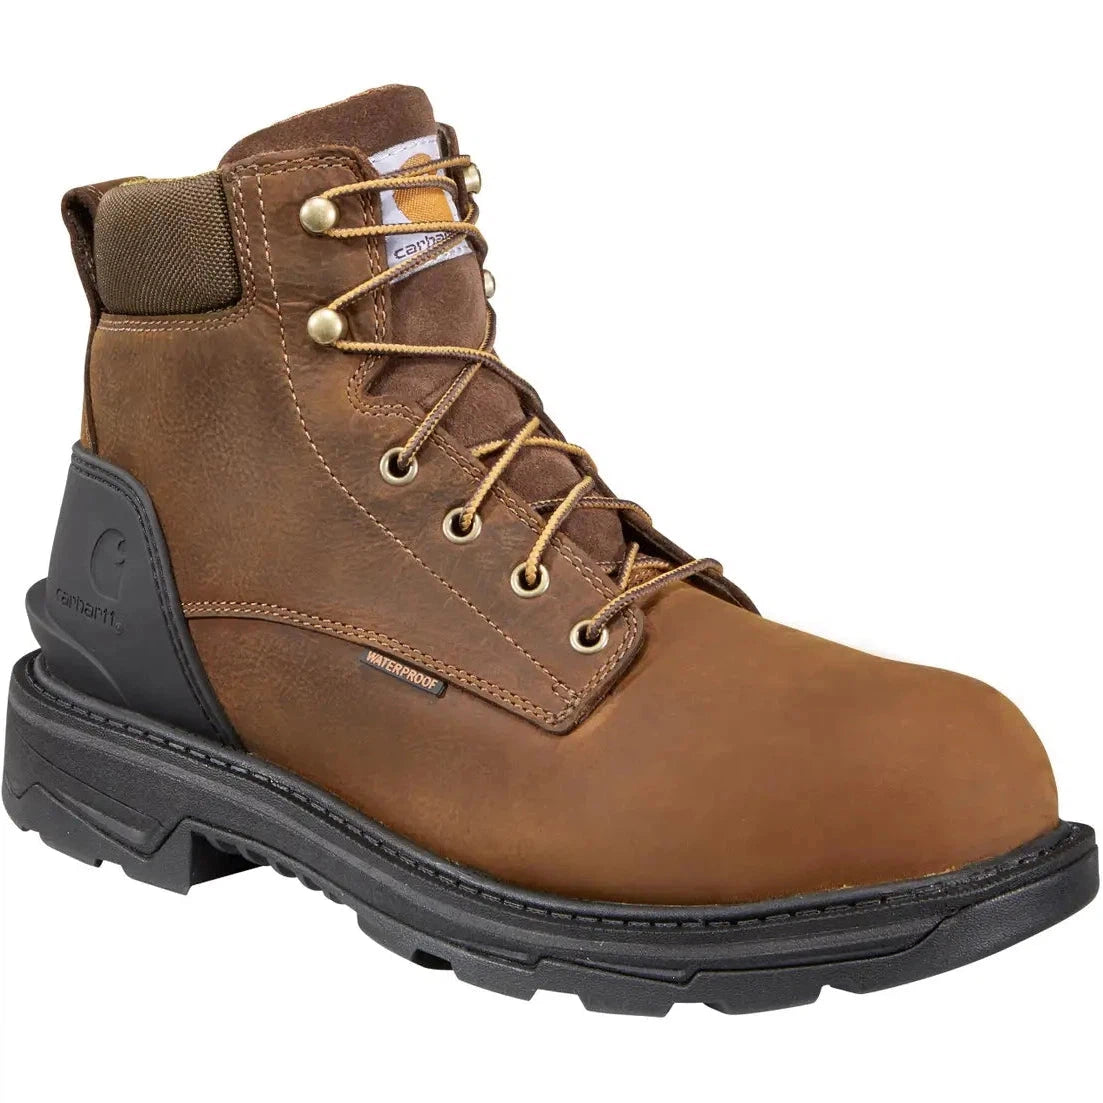 Carhartt Men's Ironwood 6" Waterproof Alloy Toe Work Boot - Brown - FT6500-M 8 / Medium / Brown - Overlook Boots